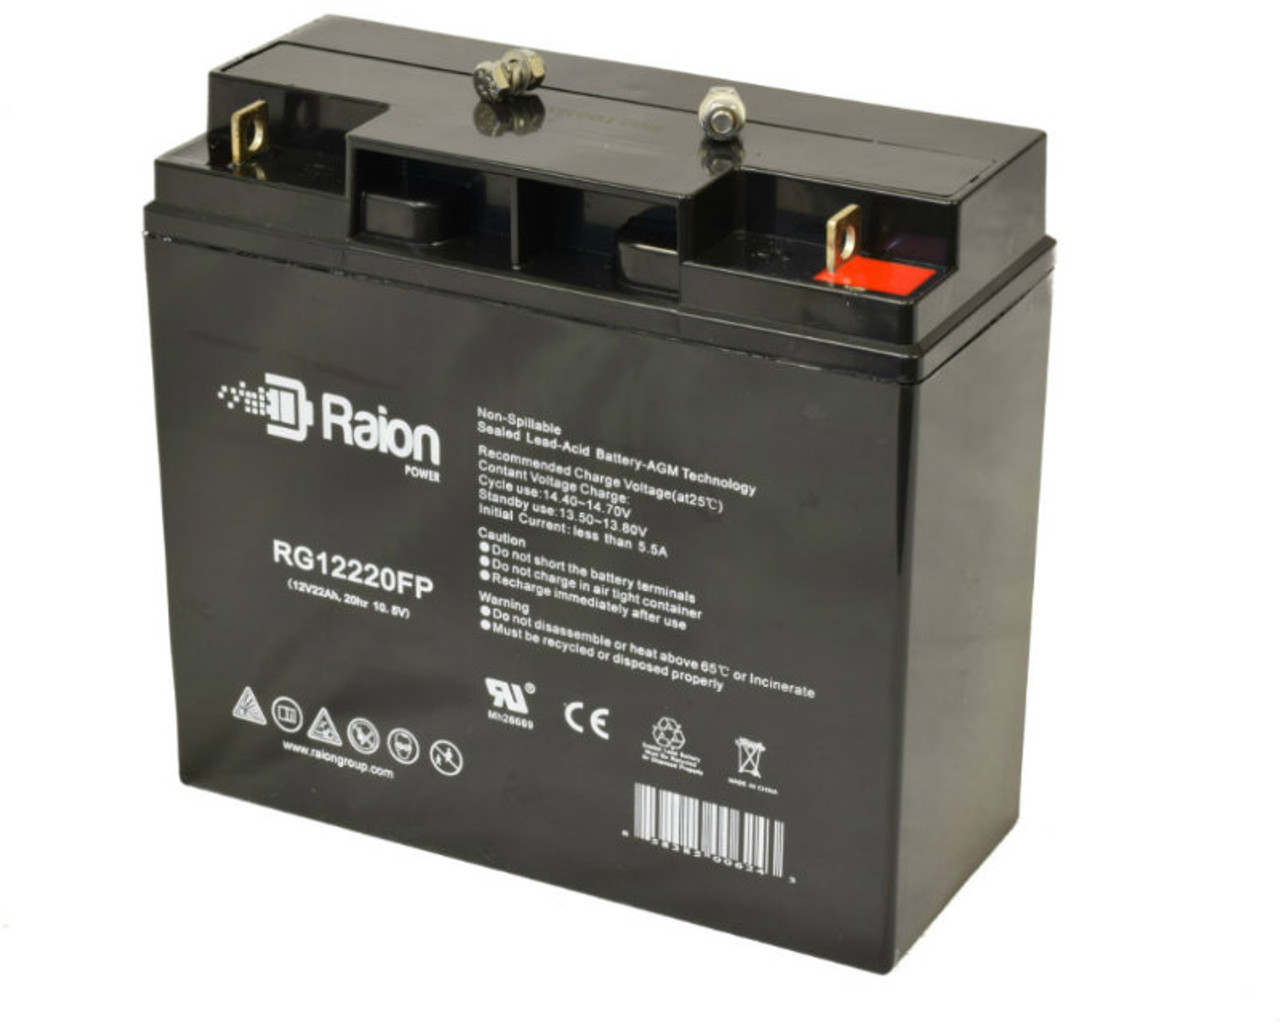 Raion Power RG12220FP 12V 22Ah Lead Acid Battery for Ultracell UCG22-12